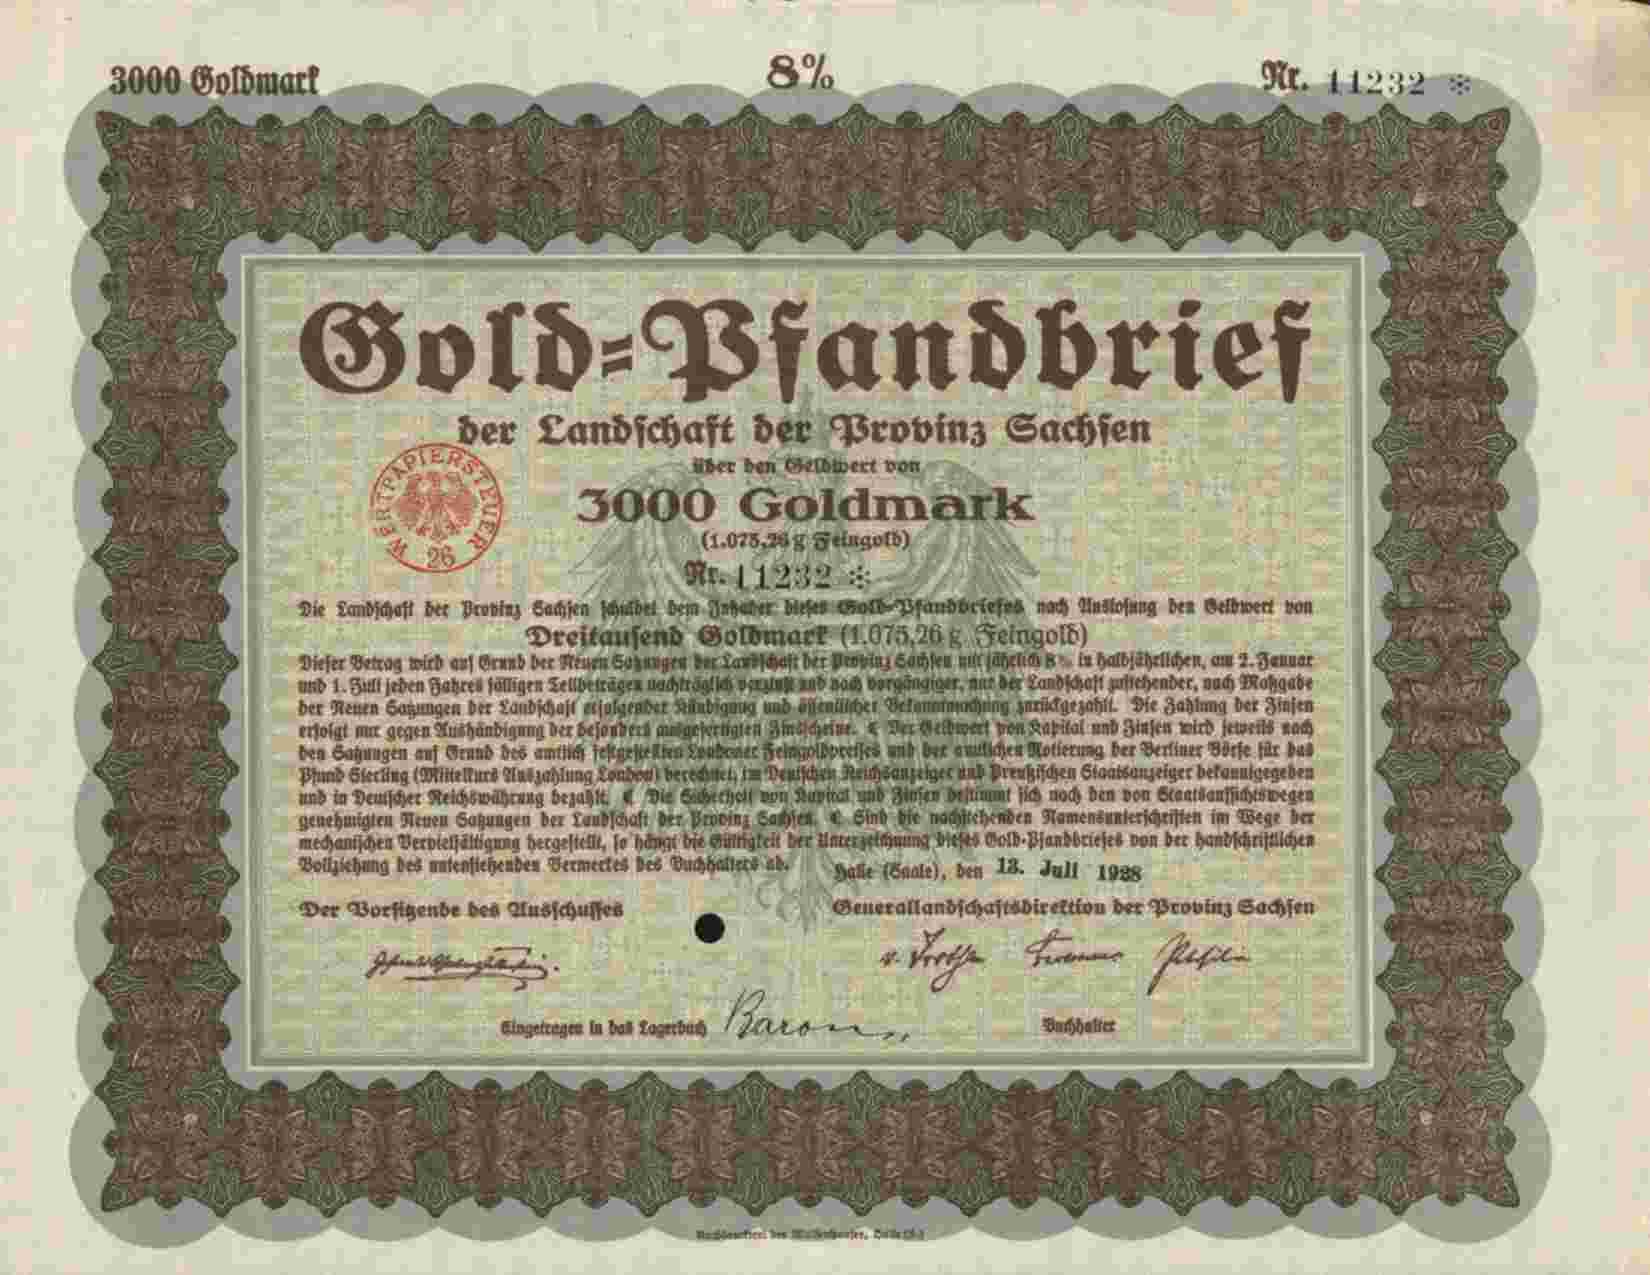 GOLD PFANDBRIEF LANDSCHAFT DER  PROVINZ SACHSEN ,HALLE 3000 GOLDMARK 1928 - Banque & Assurance